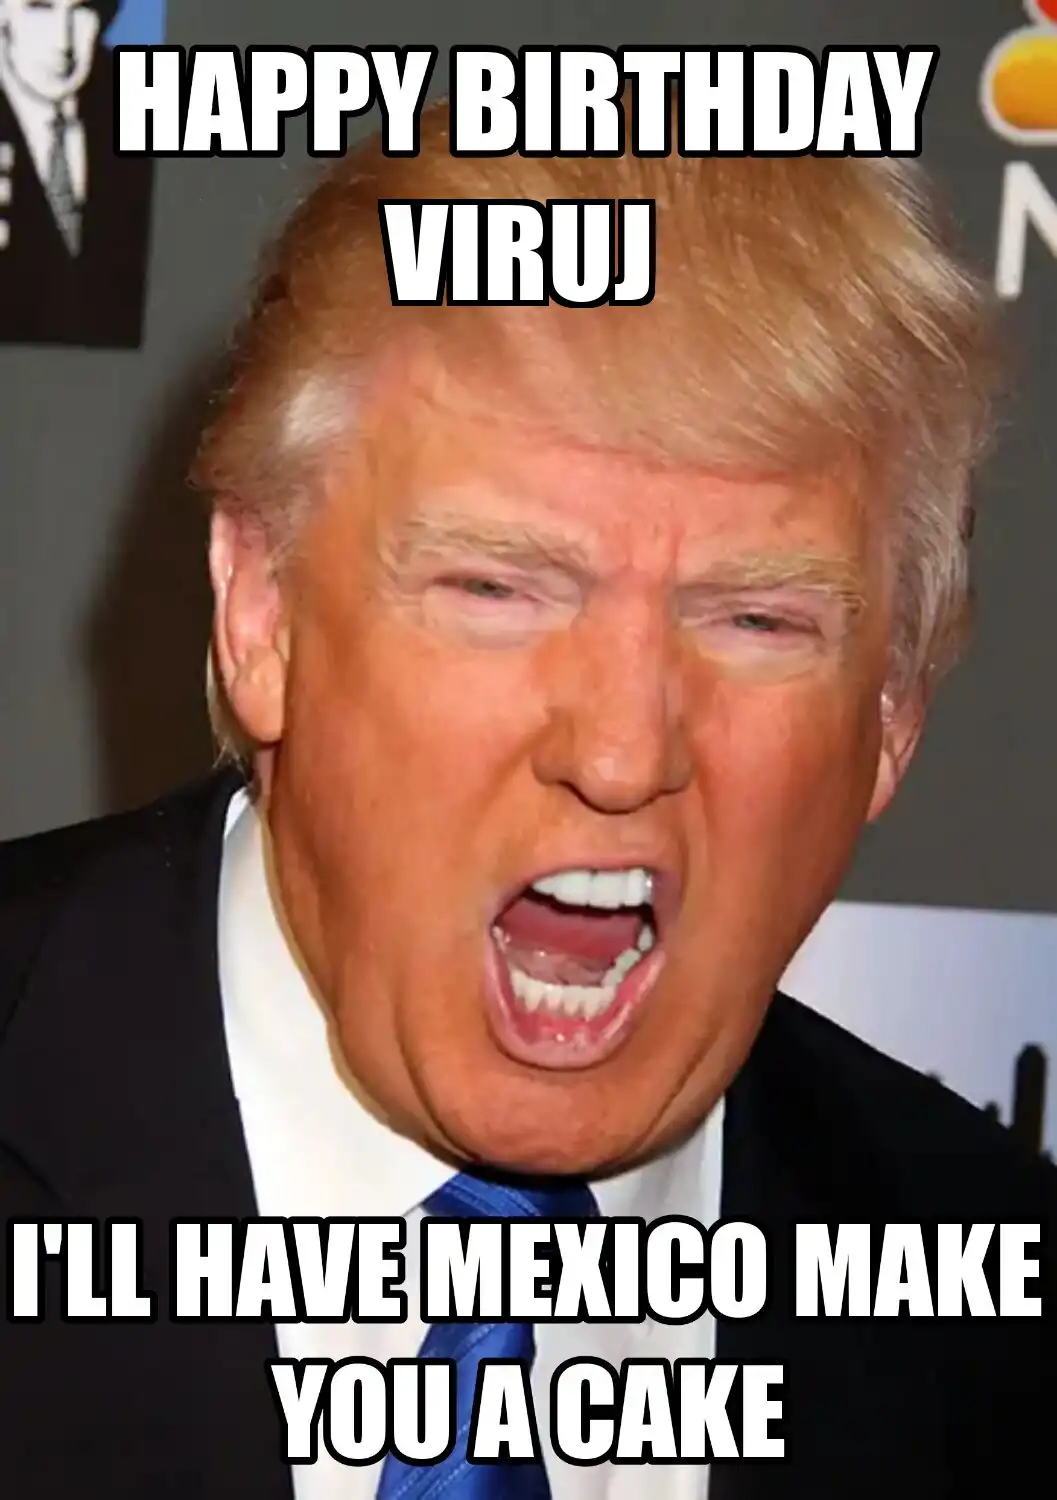 Happy Birthday Viruj Mexico Make You A Cake Meme